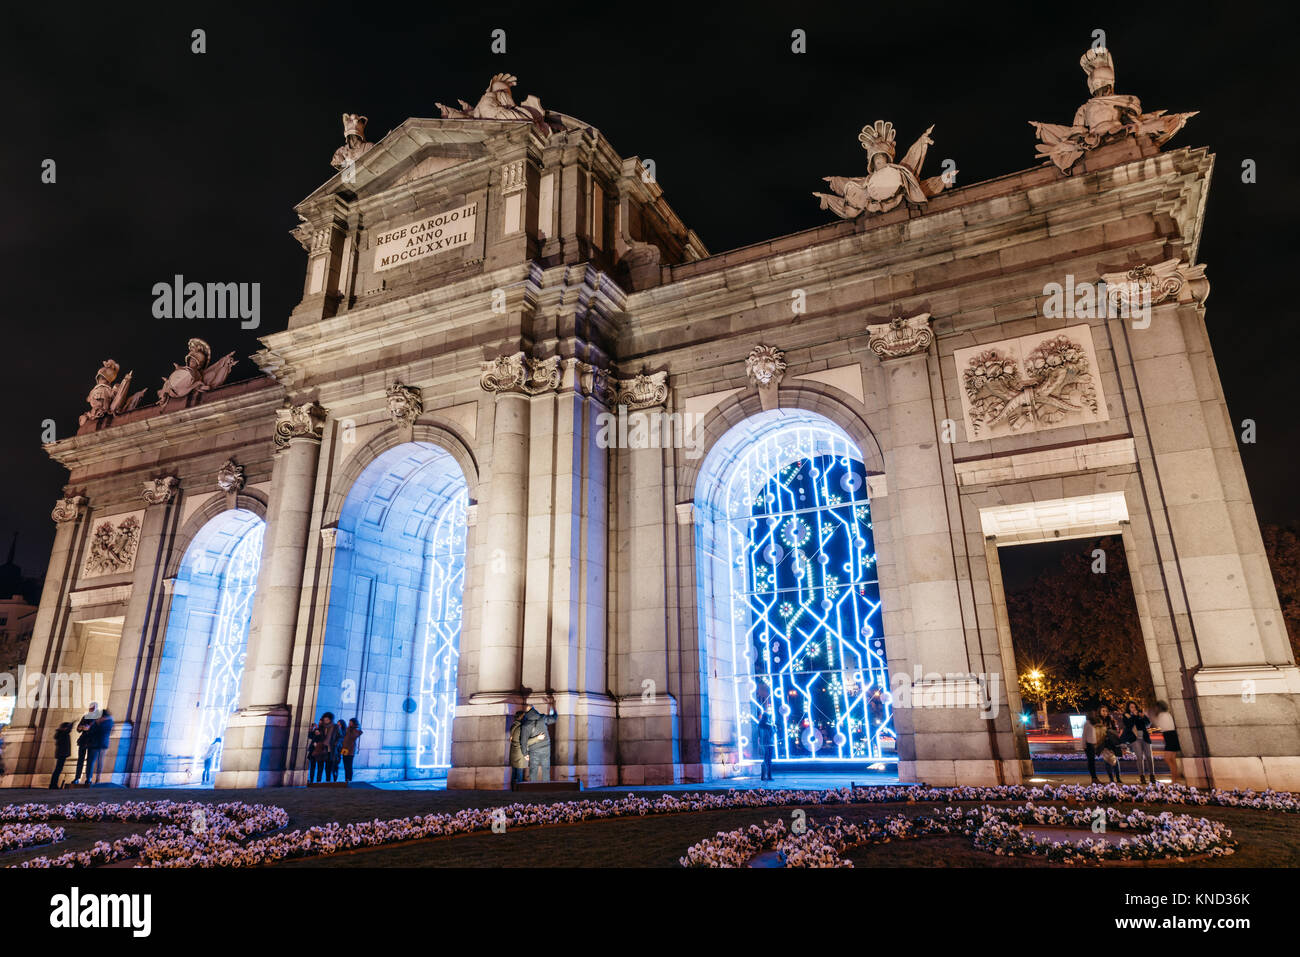 Puerta von Alcala in Madrid in der Nacht auf Weihnachten Stockfoto